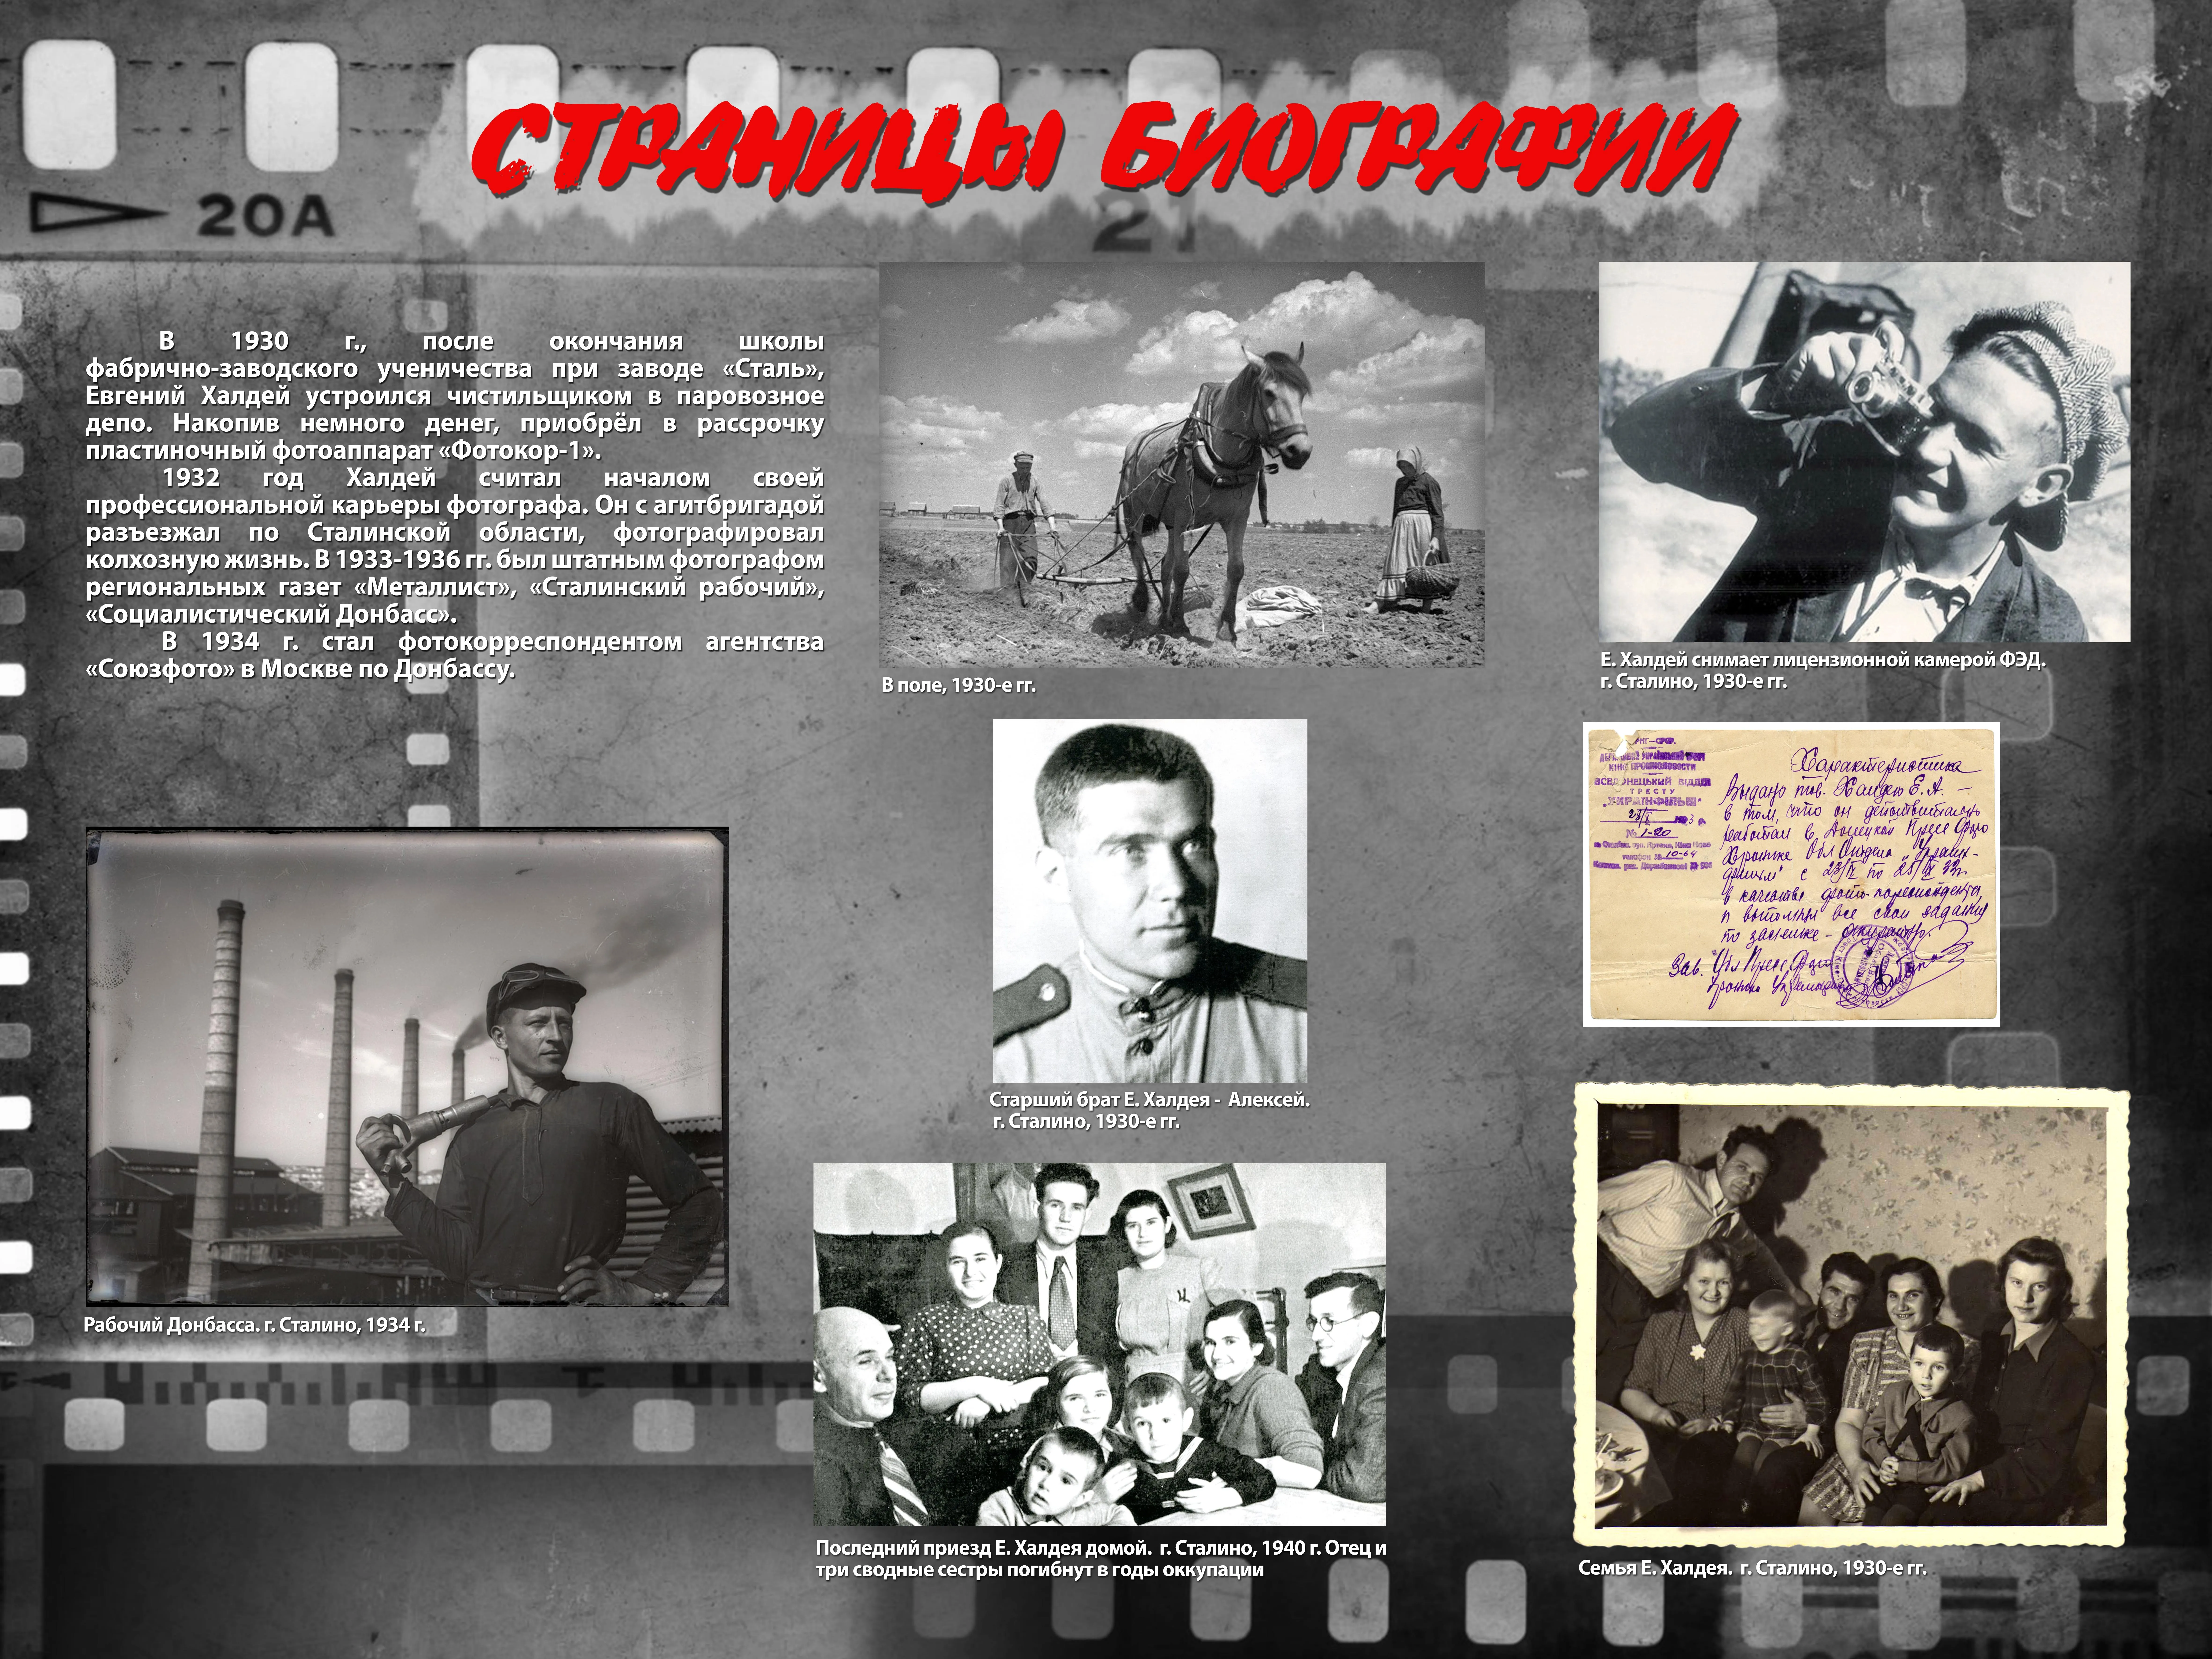 Донецкий музей представил мультимедийную выставку о фотокорреспонденте